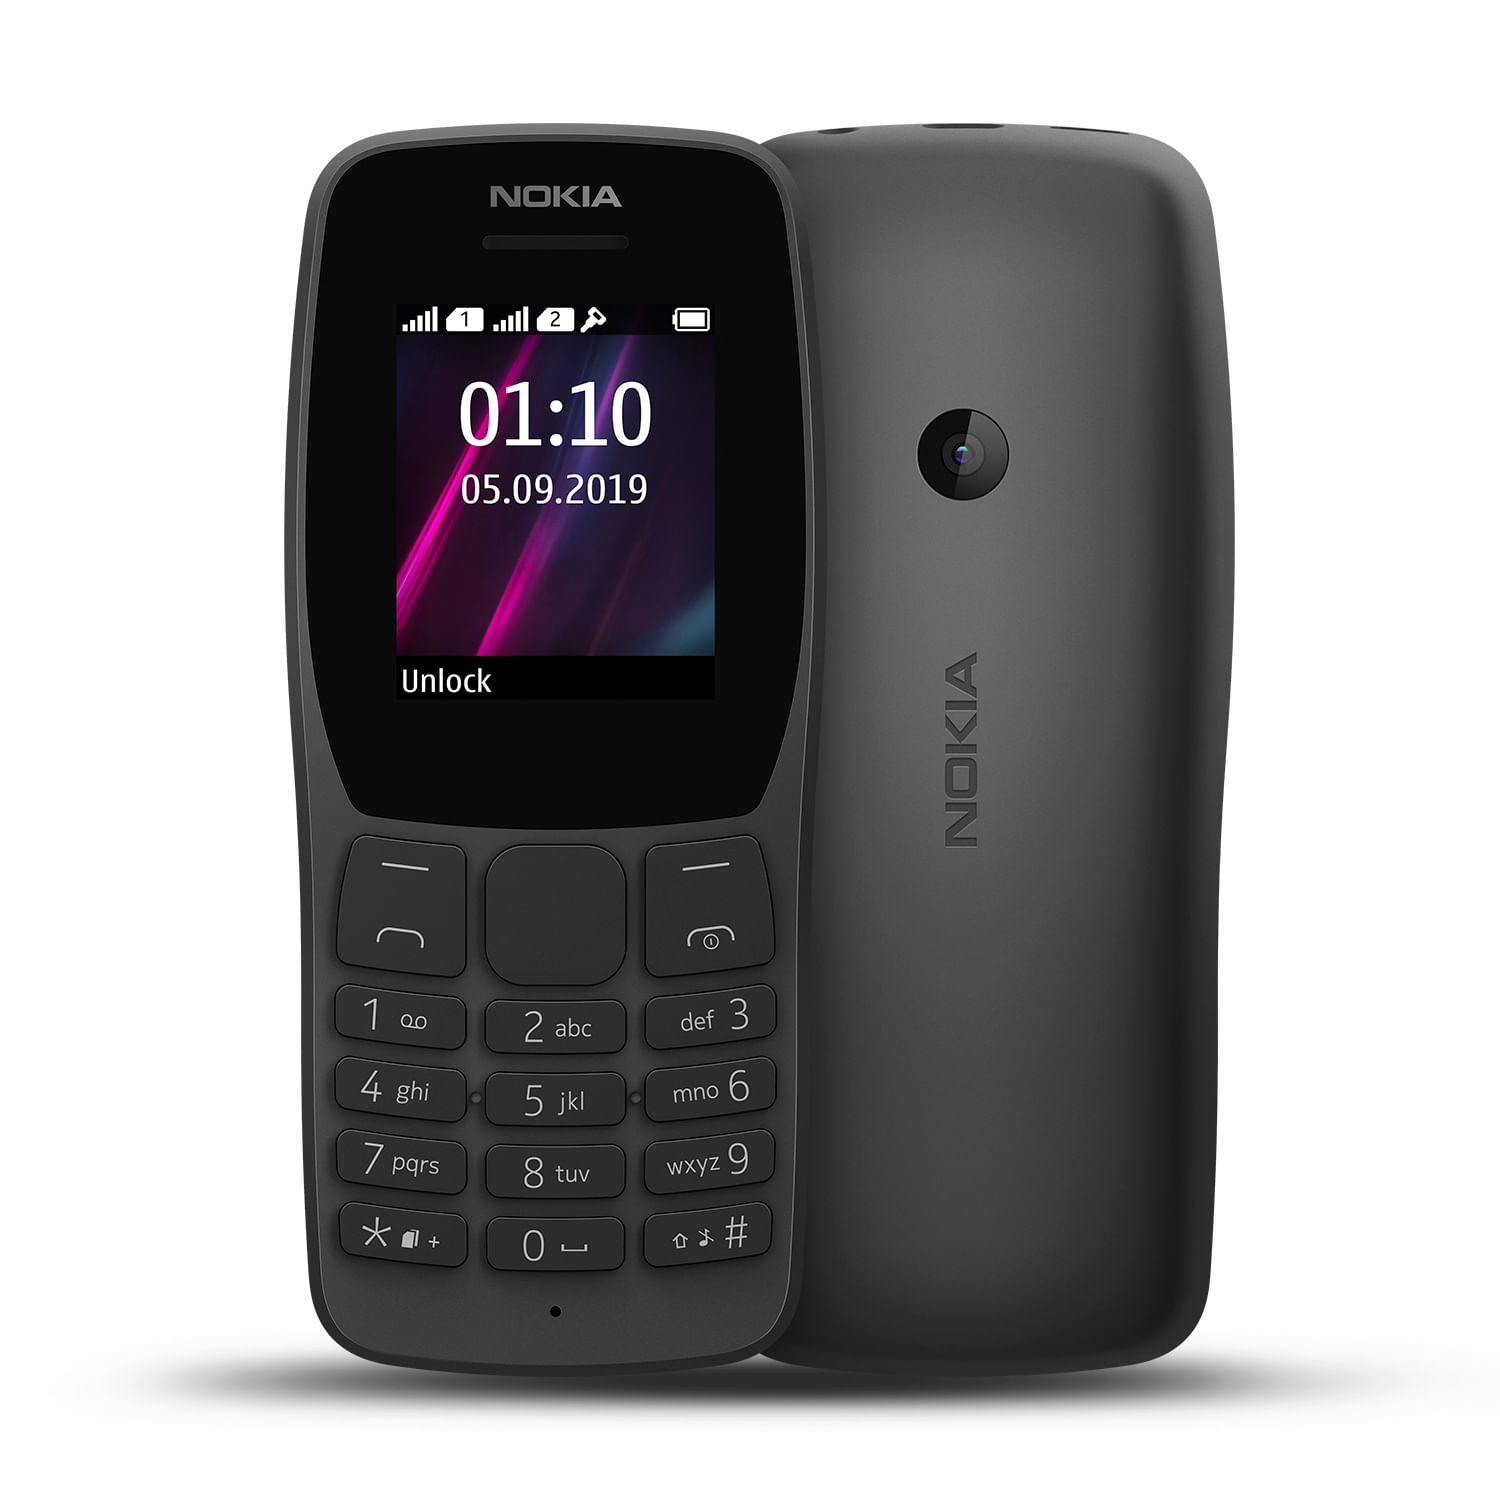 Celulares básicos Nokia, Blu, Uno, Motorola y más - Real Plaza